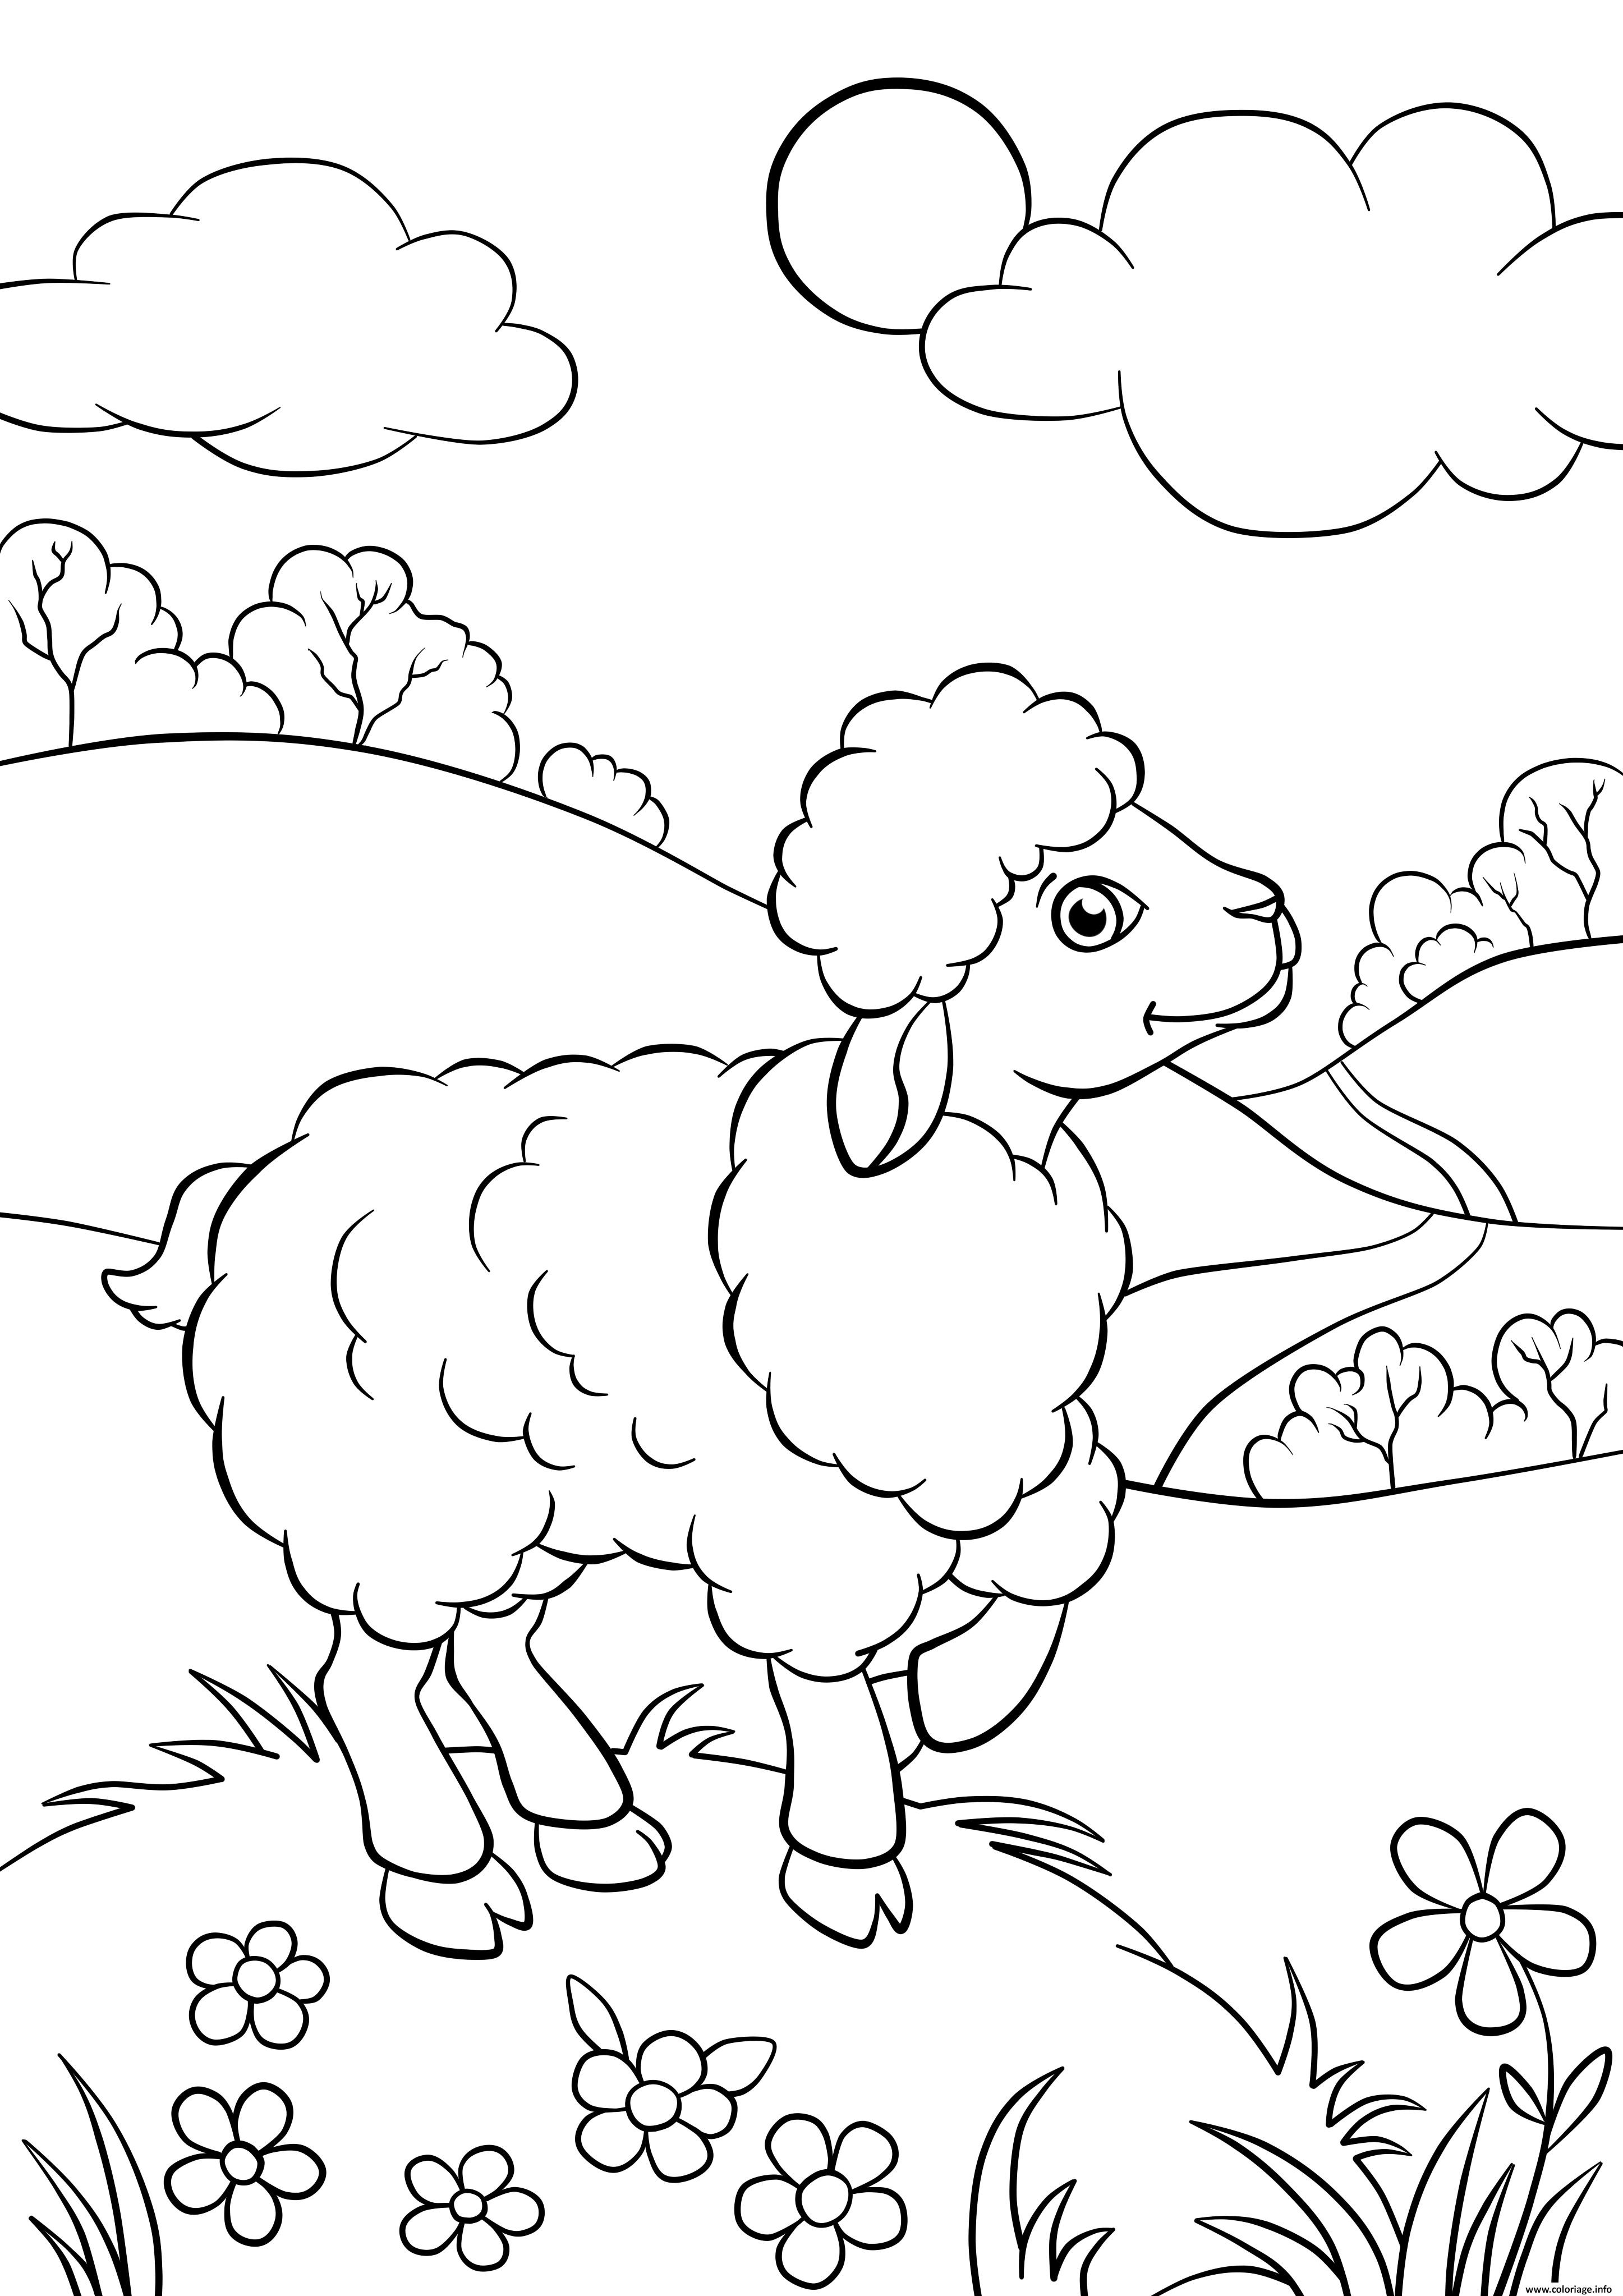 Dessin mouton dans la nature Coloriage Gratuit à Imprimer